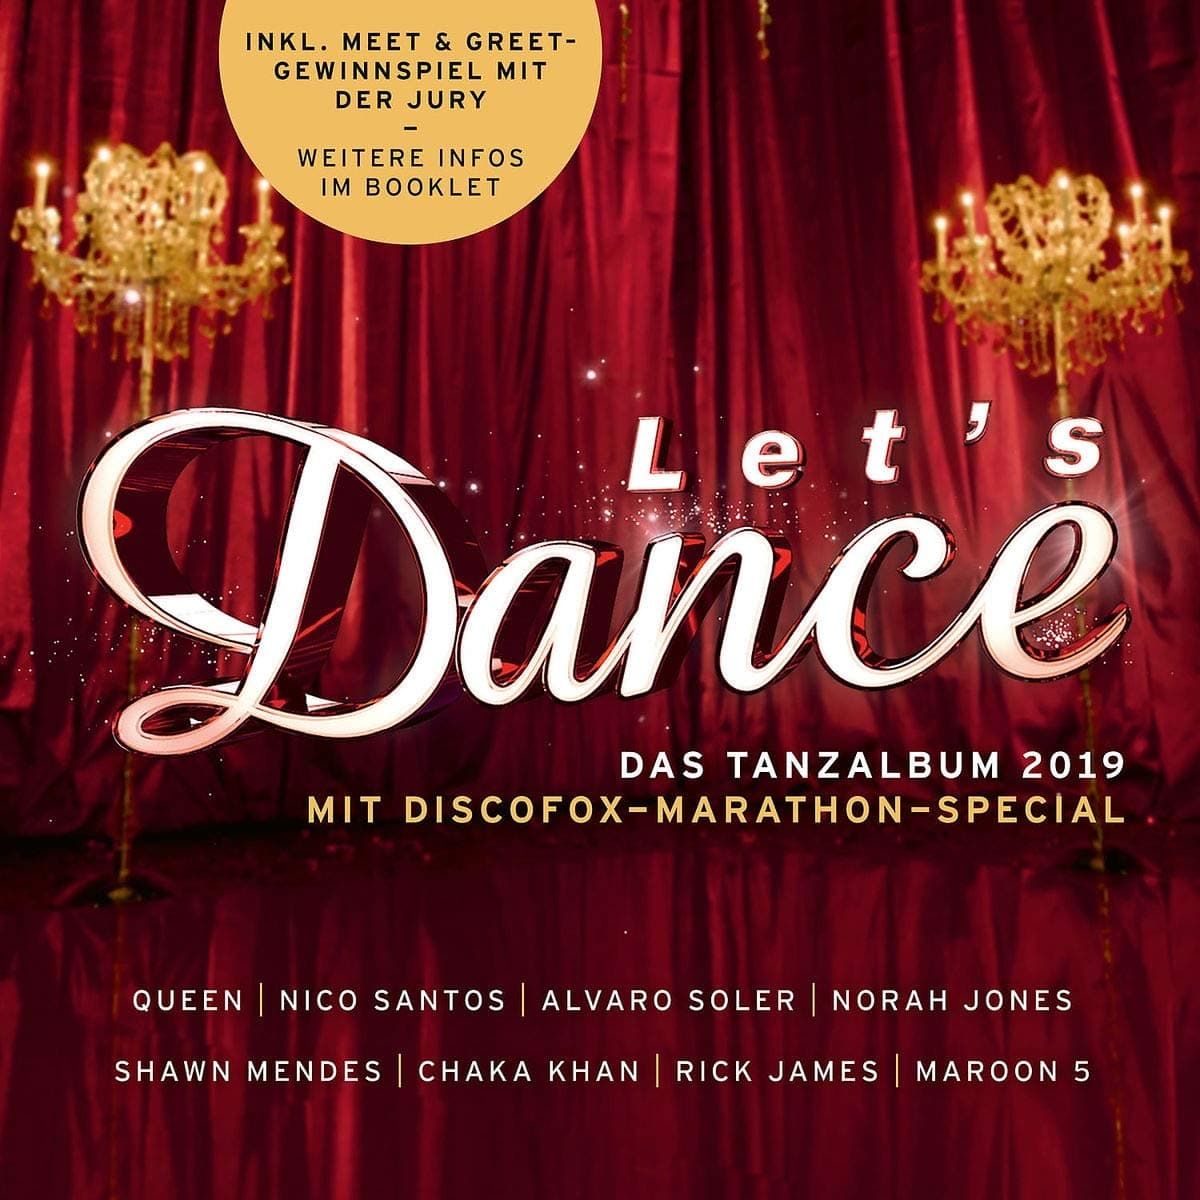 Let's dance CD 2019 - Die Songs bzw. Let's dance Musik von 2019